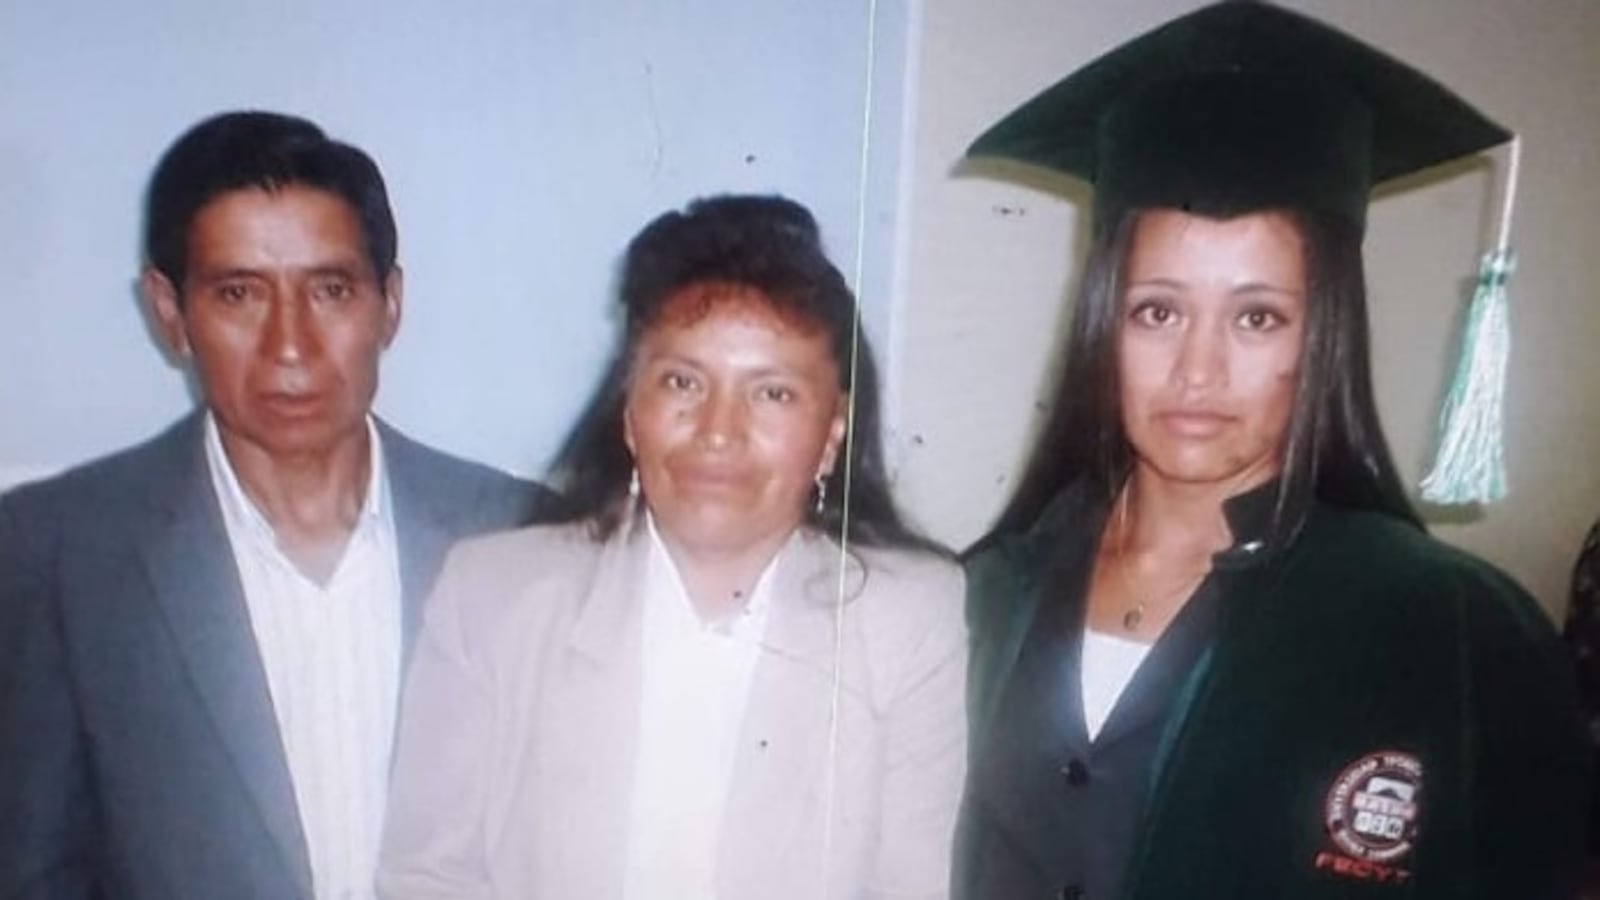 A family at a college graduation ceremony // Una familia en una ceremonia de graduación universitaria.